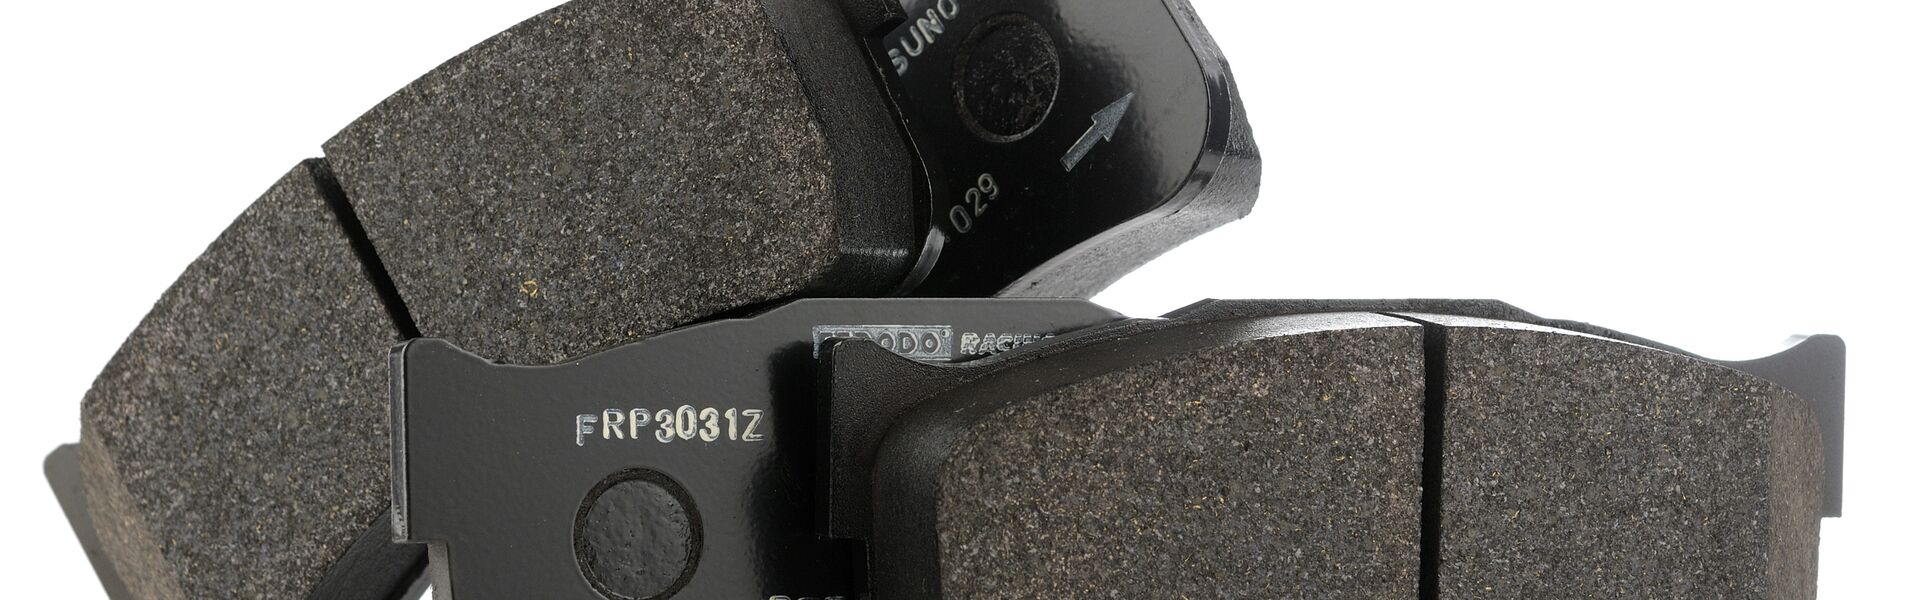 Sada předních destiček Ferodo DS2500 - náhrada za OEM sériový díl (standartní ocelové brzdy)